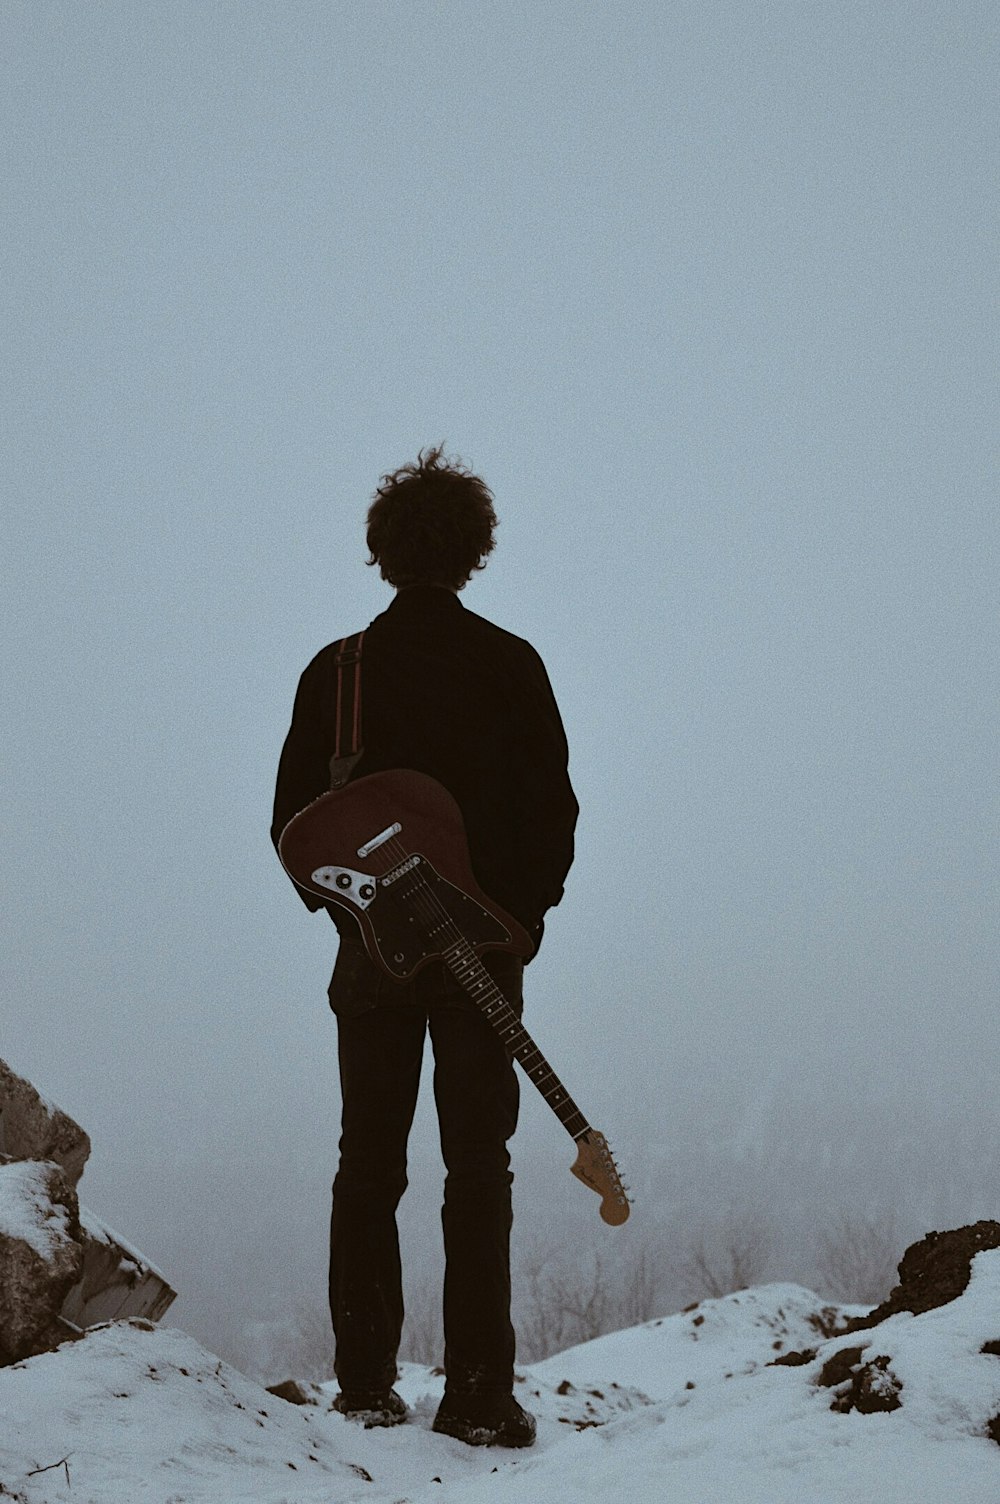 homme avec guitare sur son dos debout sur la falaise